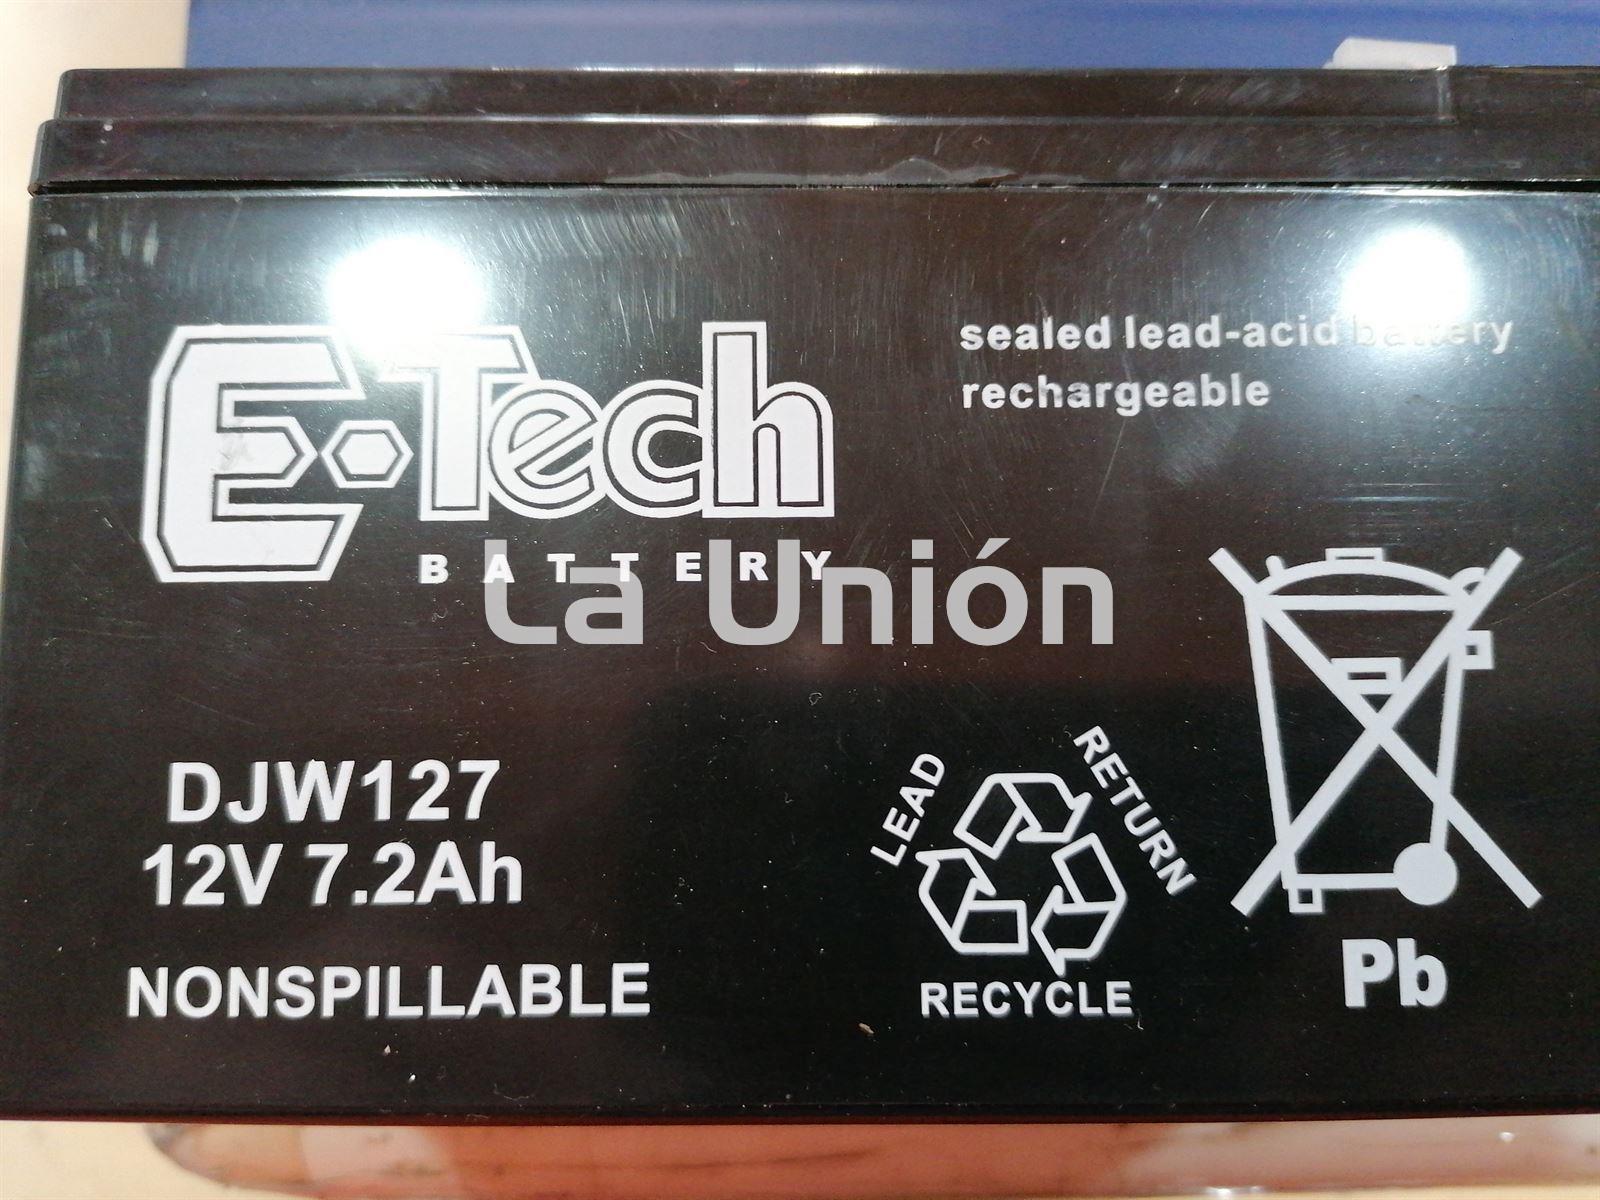 Batería Tra torcortacesped E. Tech - Imagen 1